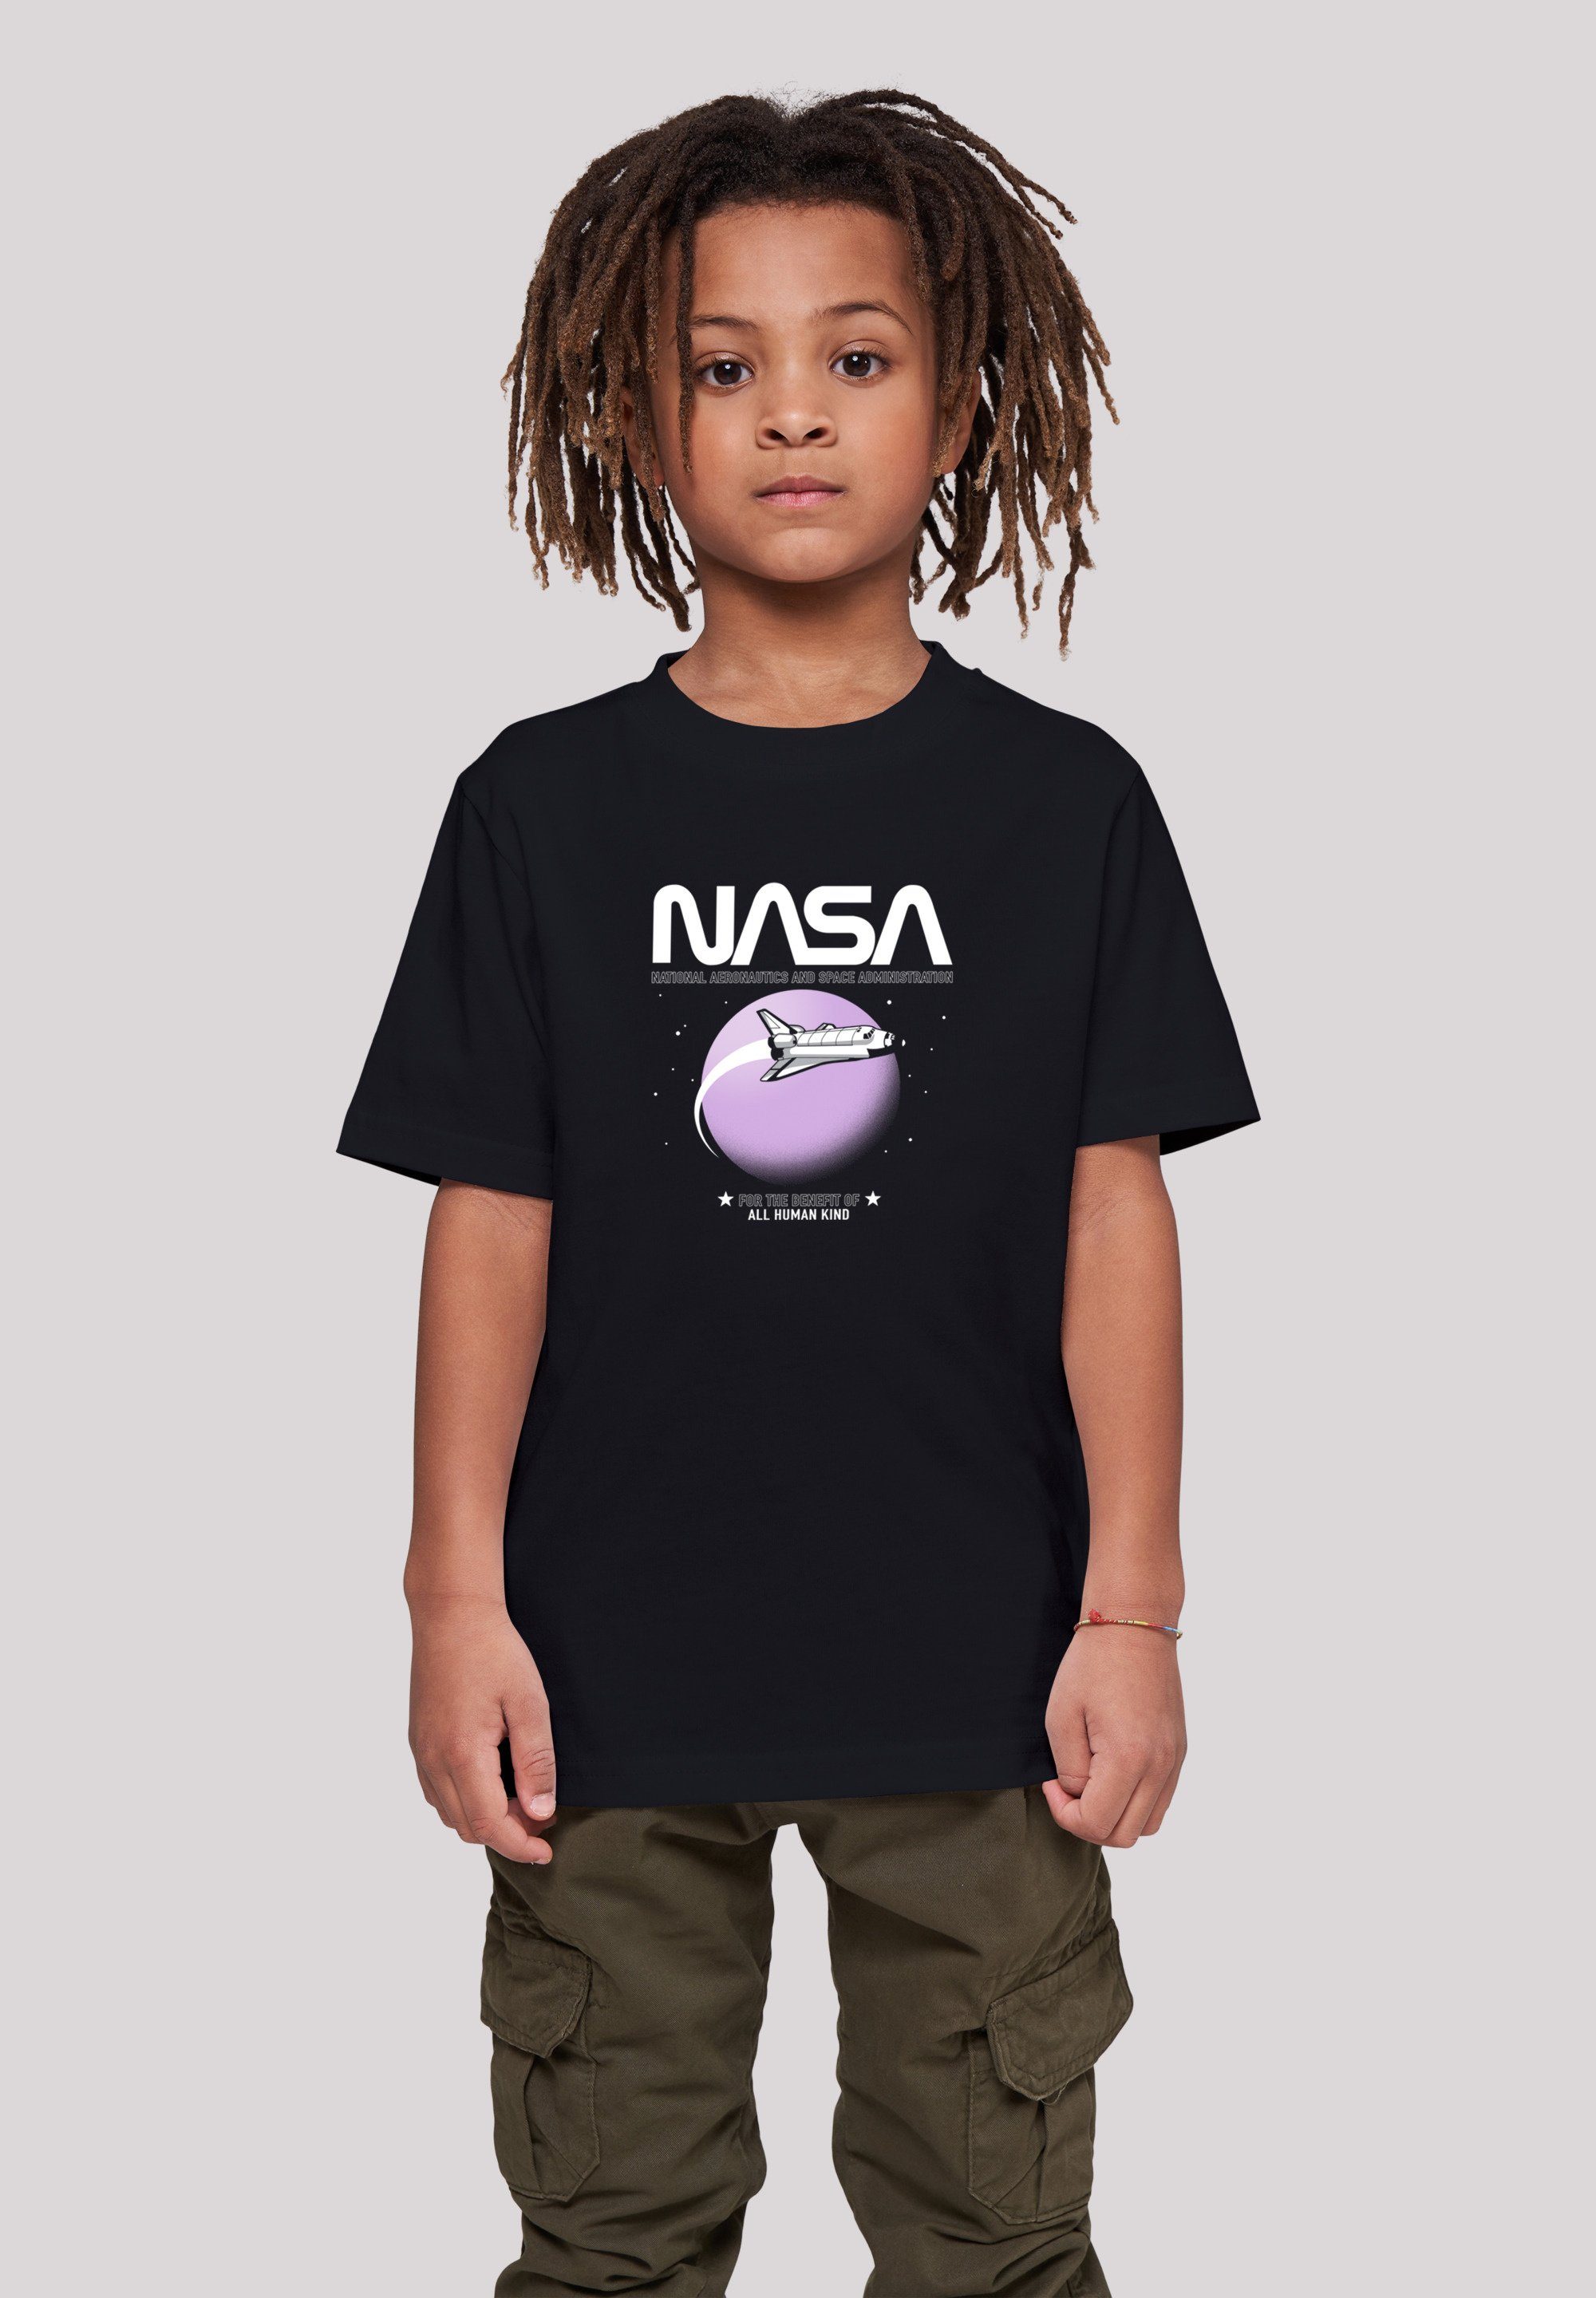 NASA ist T-Shirt groß Unser Merch,Jungen, 146cm trägt Größe F4NT4STIC Mädchen,Bedruckt, und Orbit Kinder,Premium Shuttle Unisex Model 146/152